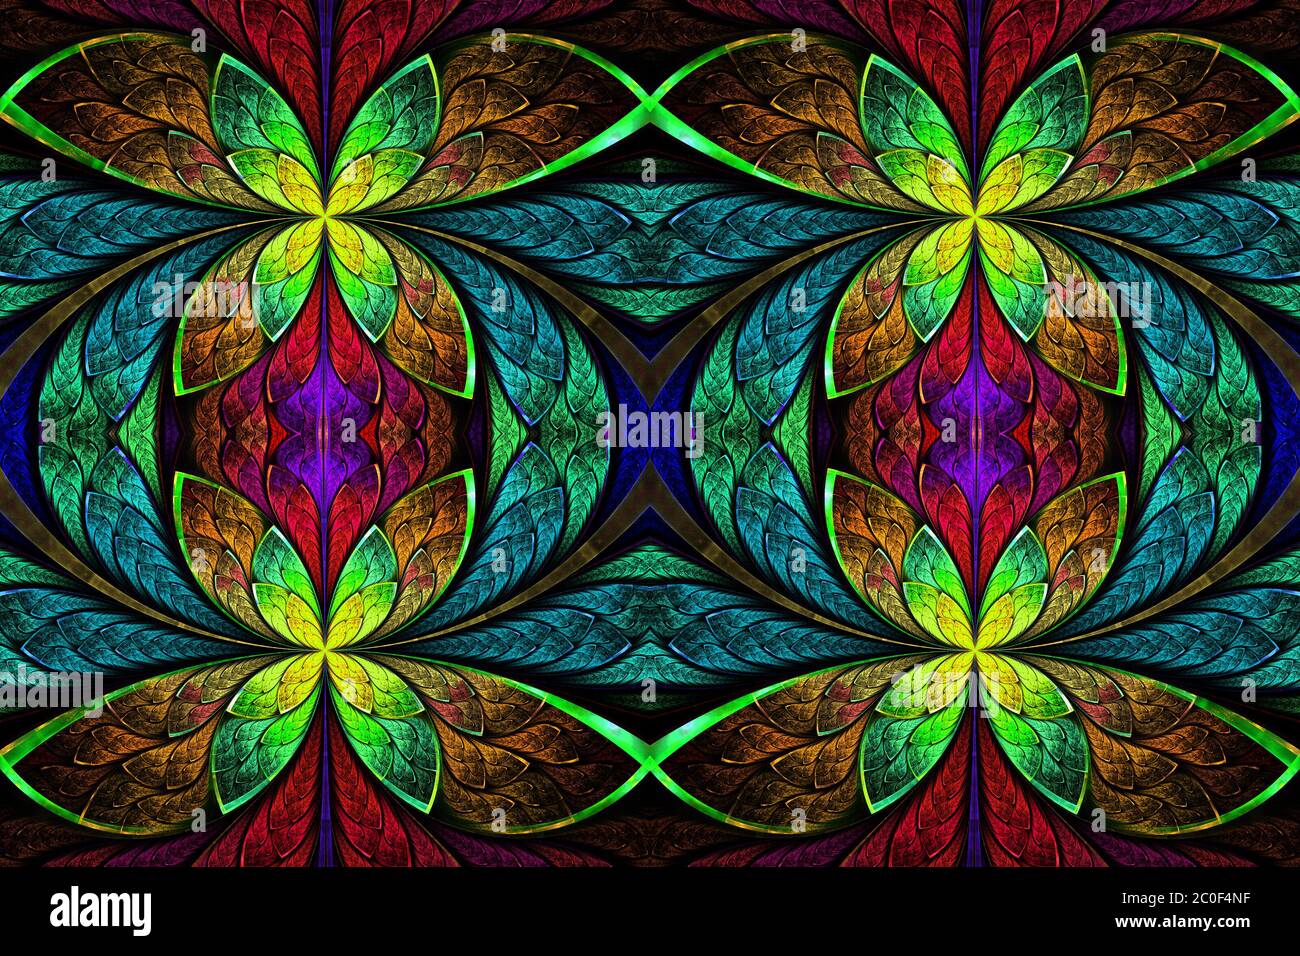 Motif symétrique multicolore dans le style de fenêtre en vitrail. Sur le noir. Graphiques générés par ordinateur. Banque D'Images